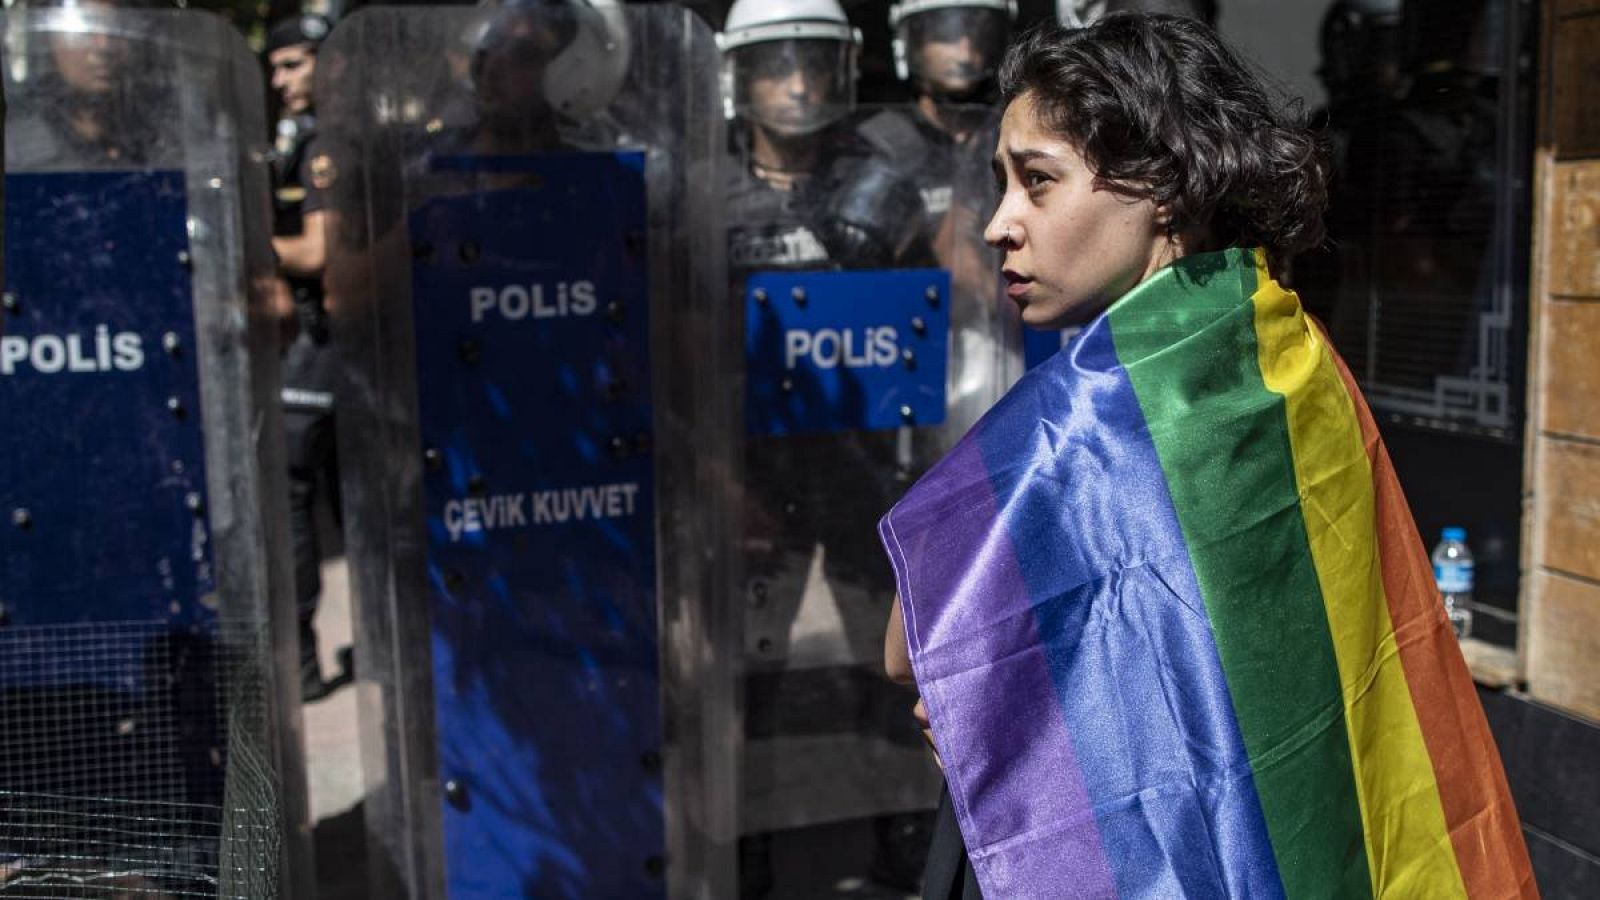 Un partidario de la comunidad LGBT sostiene una bandera con los colores del arco iris mientras la policía turca bloquea una calle durante la Marcha del Orgullo de Estambul, Turquía. 